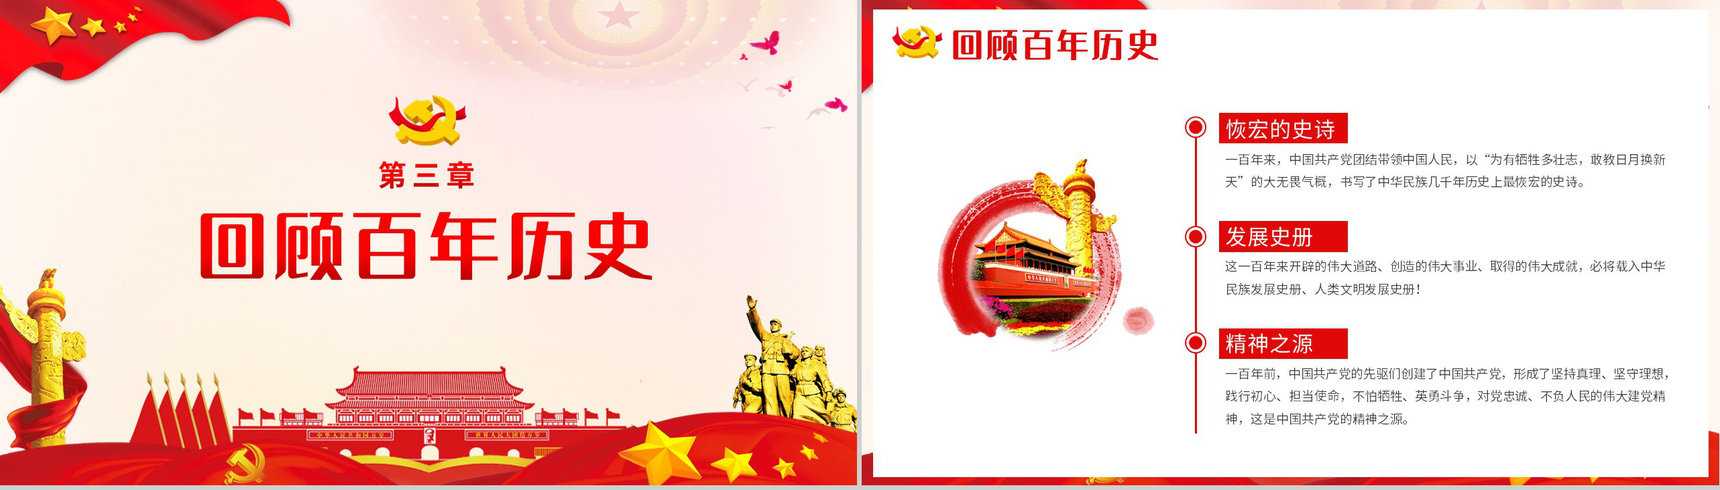 党政风庆祝中国共产党成立一百周年大会的总要讲话PPT模板-7